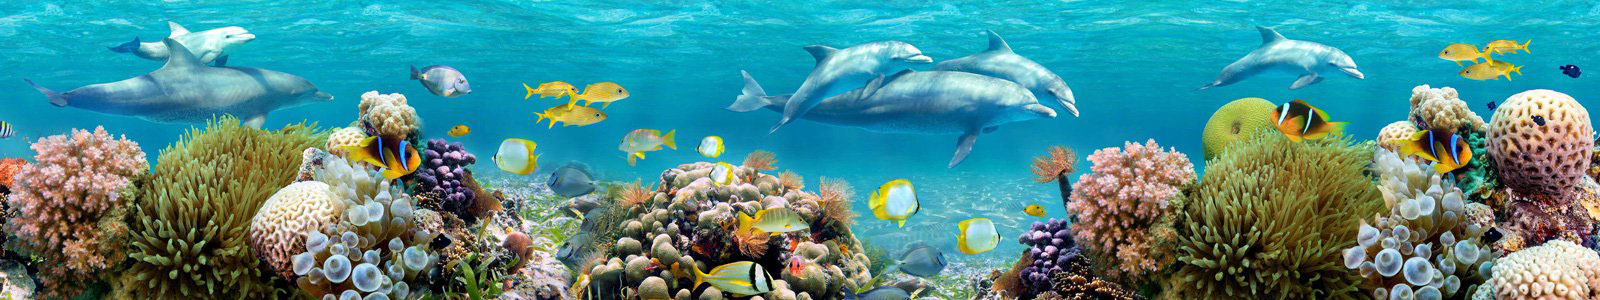 №6315 - Подводный мир с дельфинами и кораллами